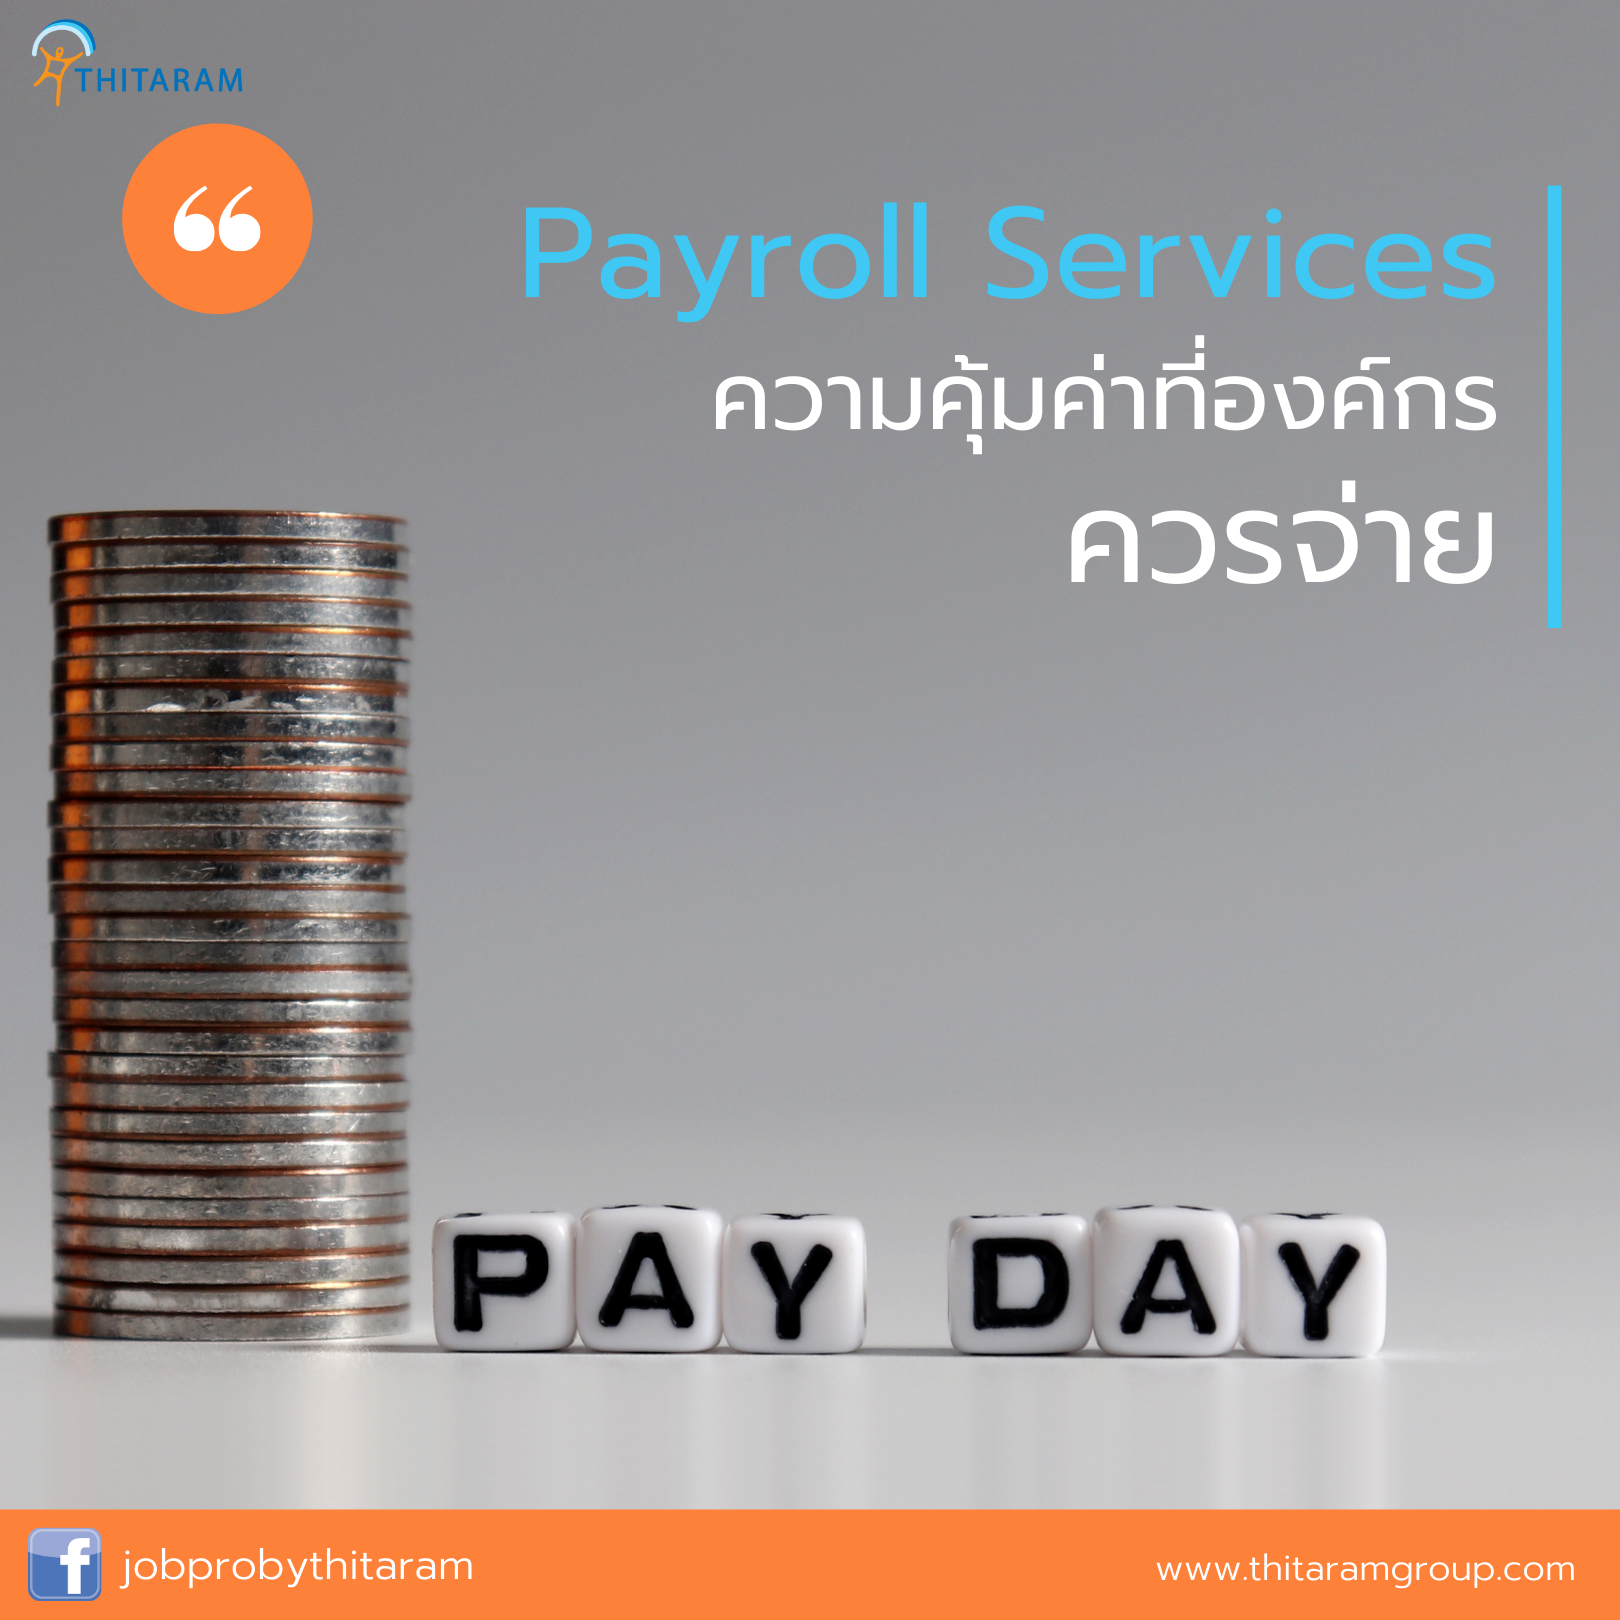 ประโยชน์ของ Payroll Outsourcing Services ความคุ้มค่าที่องค์กรควรจ่าย